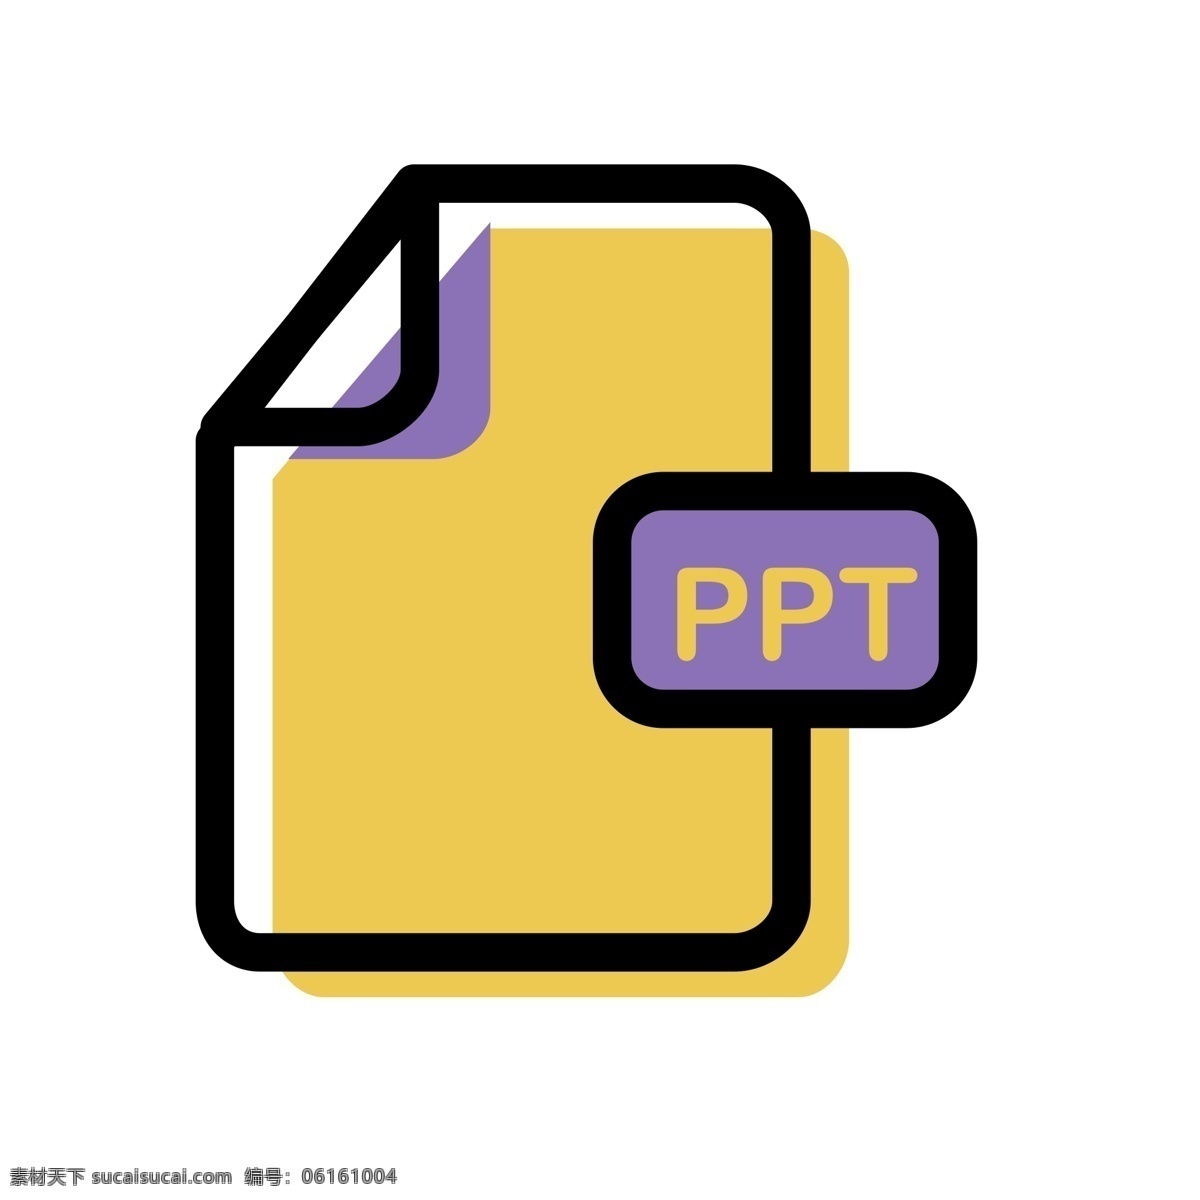 文件 格式 免 抠 图 ppt软件 ppt格式 格式文件 ui应用图标 电脑文件图标 软件图标 卡通图案 卡通插画 免抠图